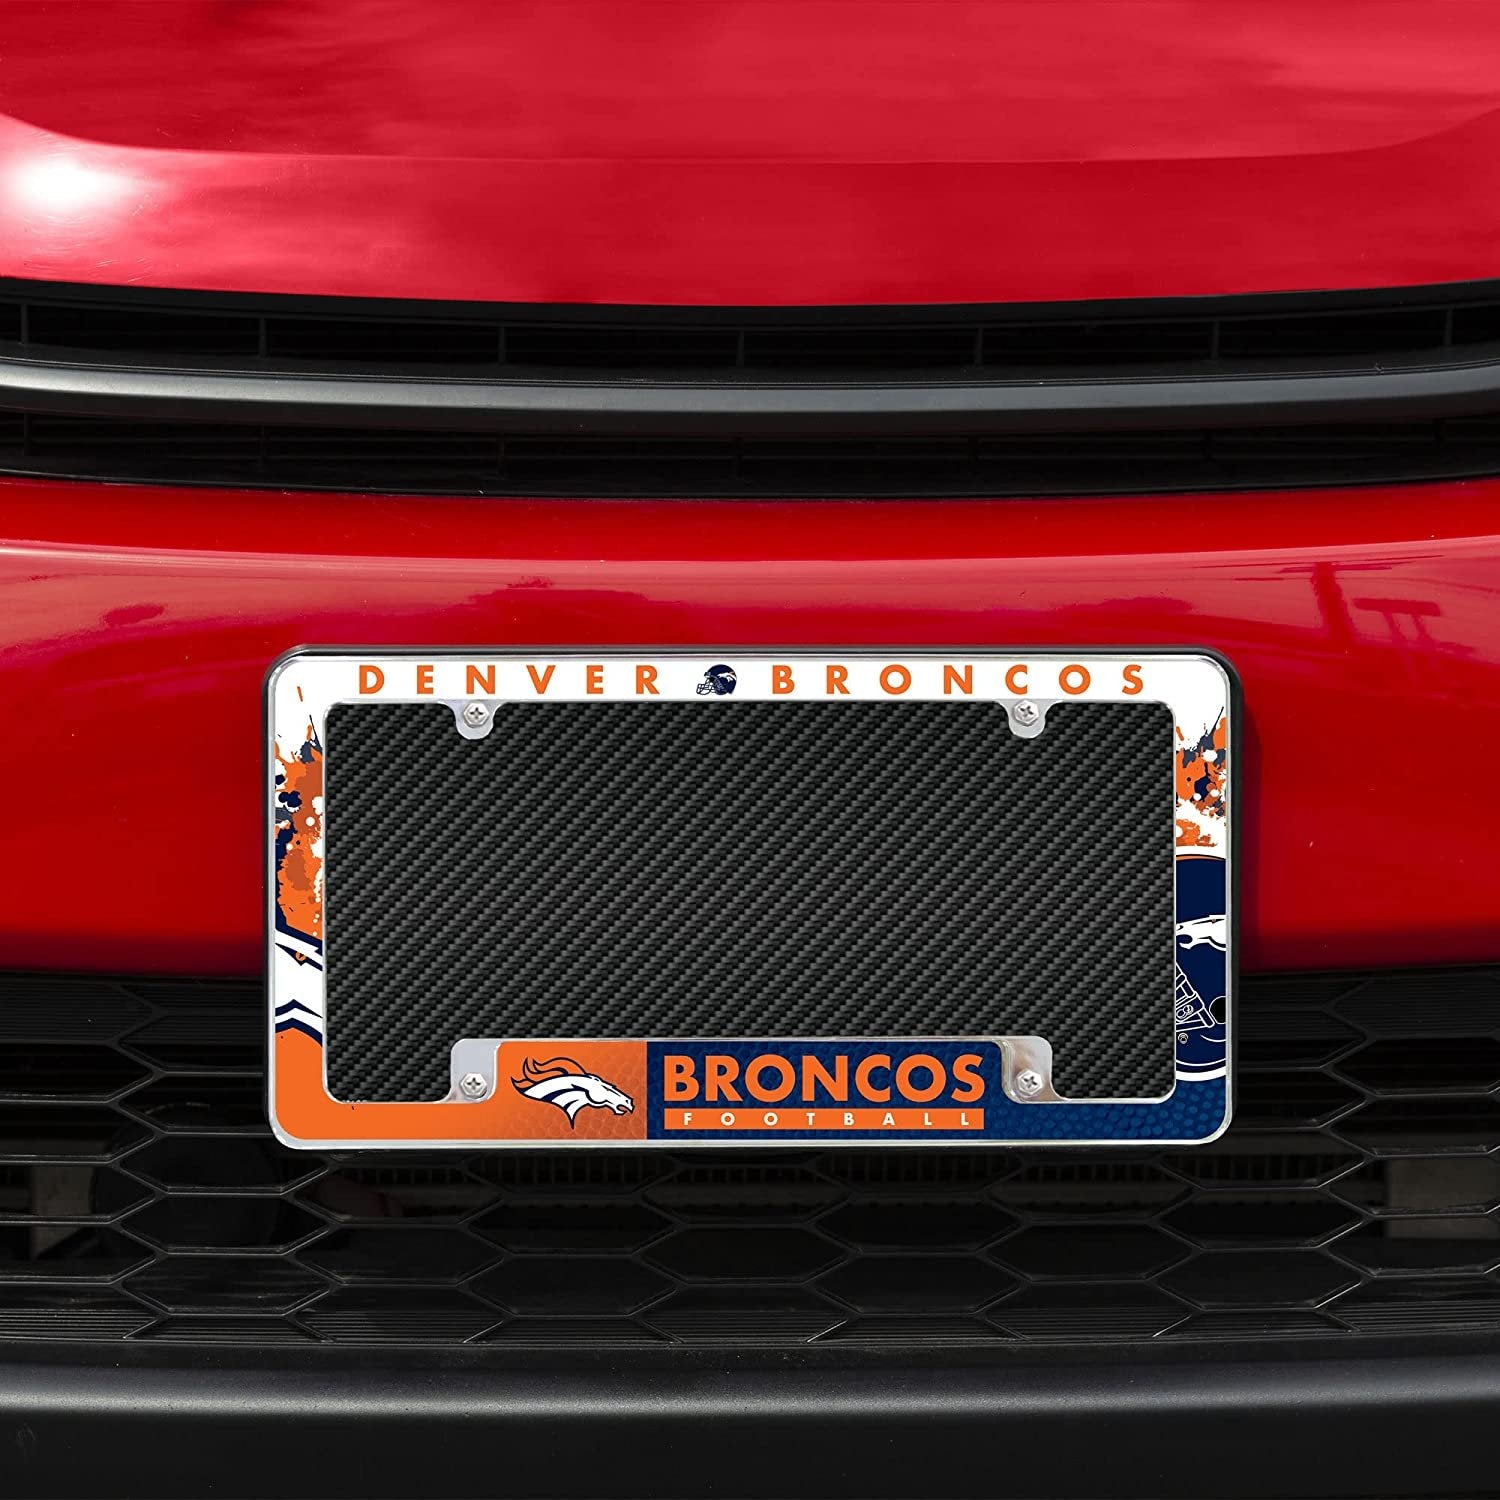 Denver Broncos Metal License Plate Frame Chrome Tag Cover All Over Design 6x12 Inch